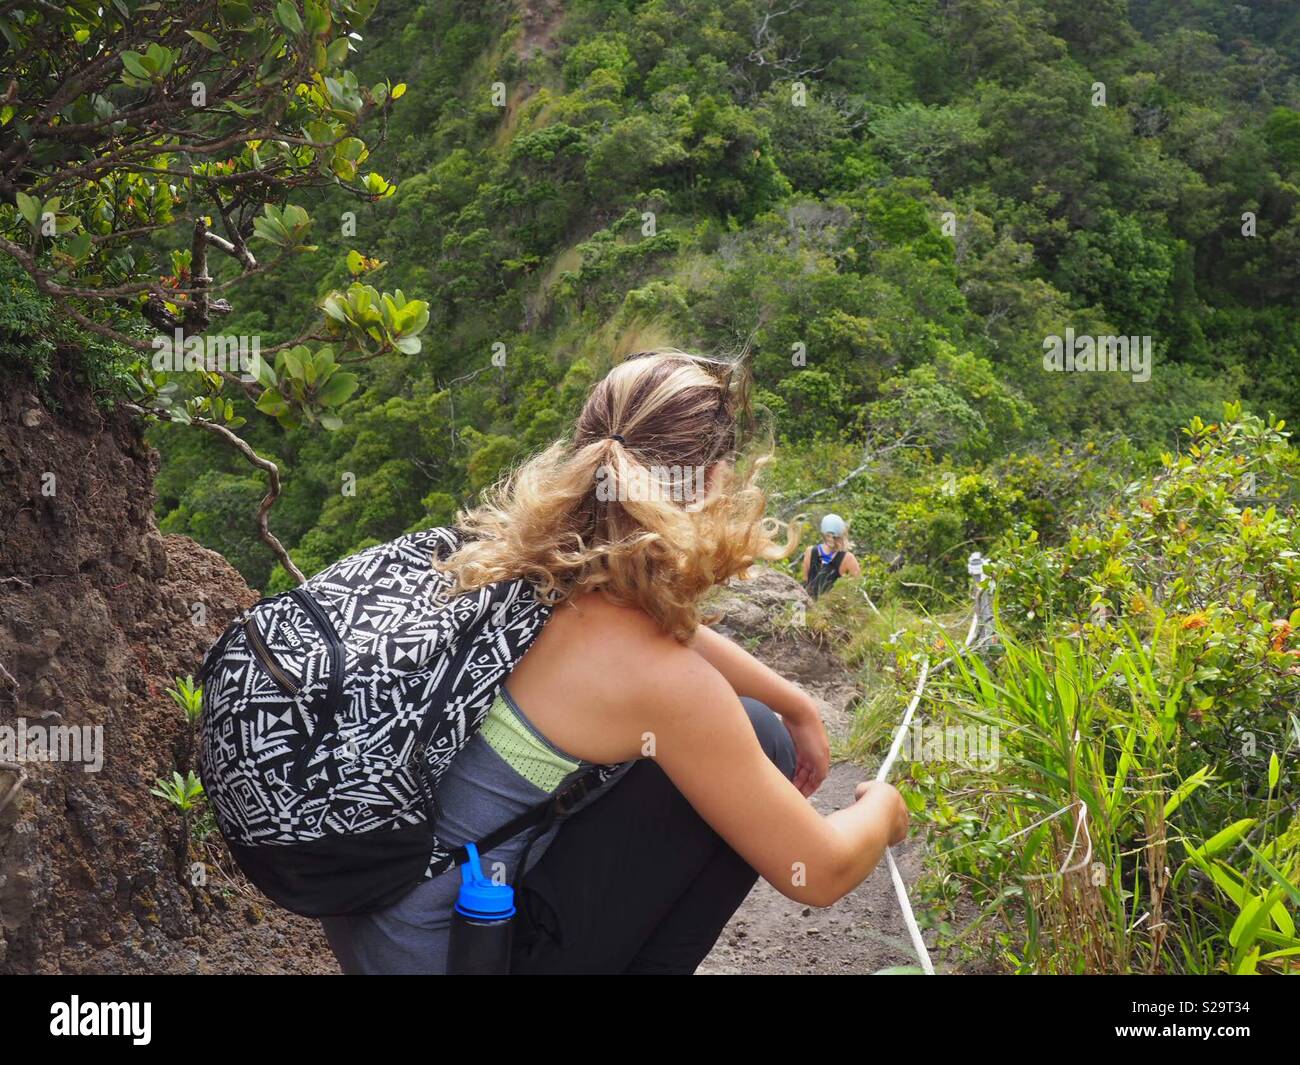 Hiking Hawaiian summits Stock Photo